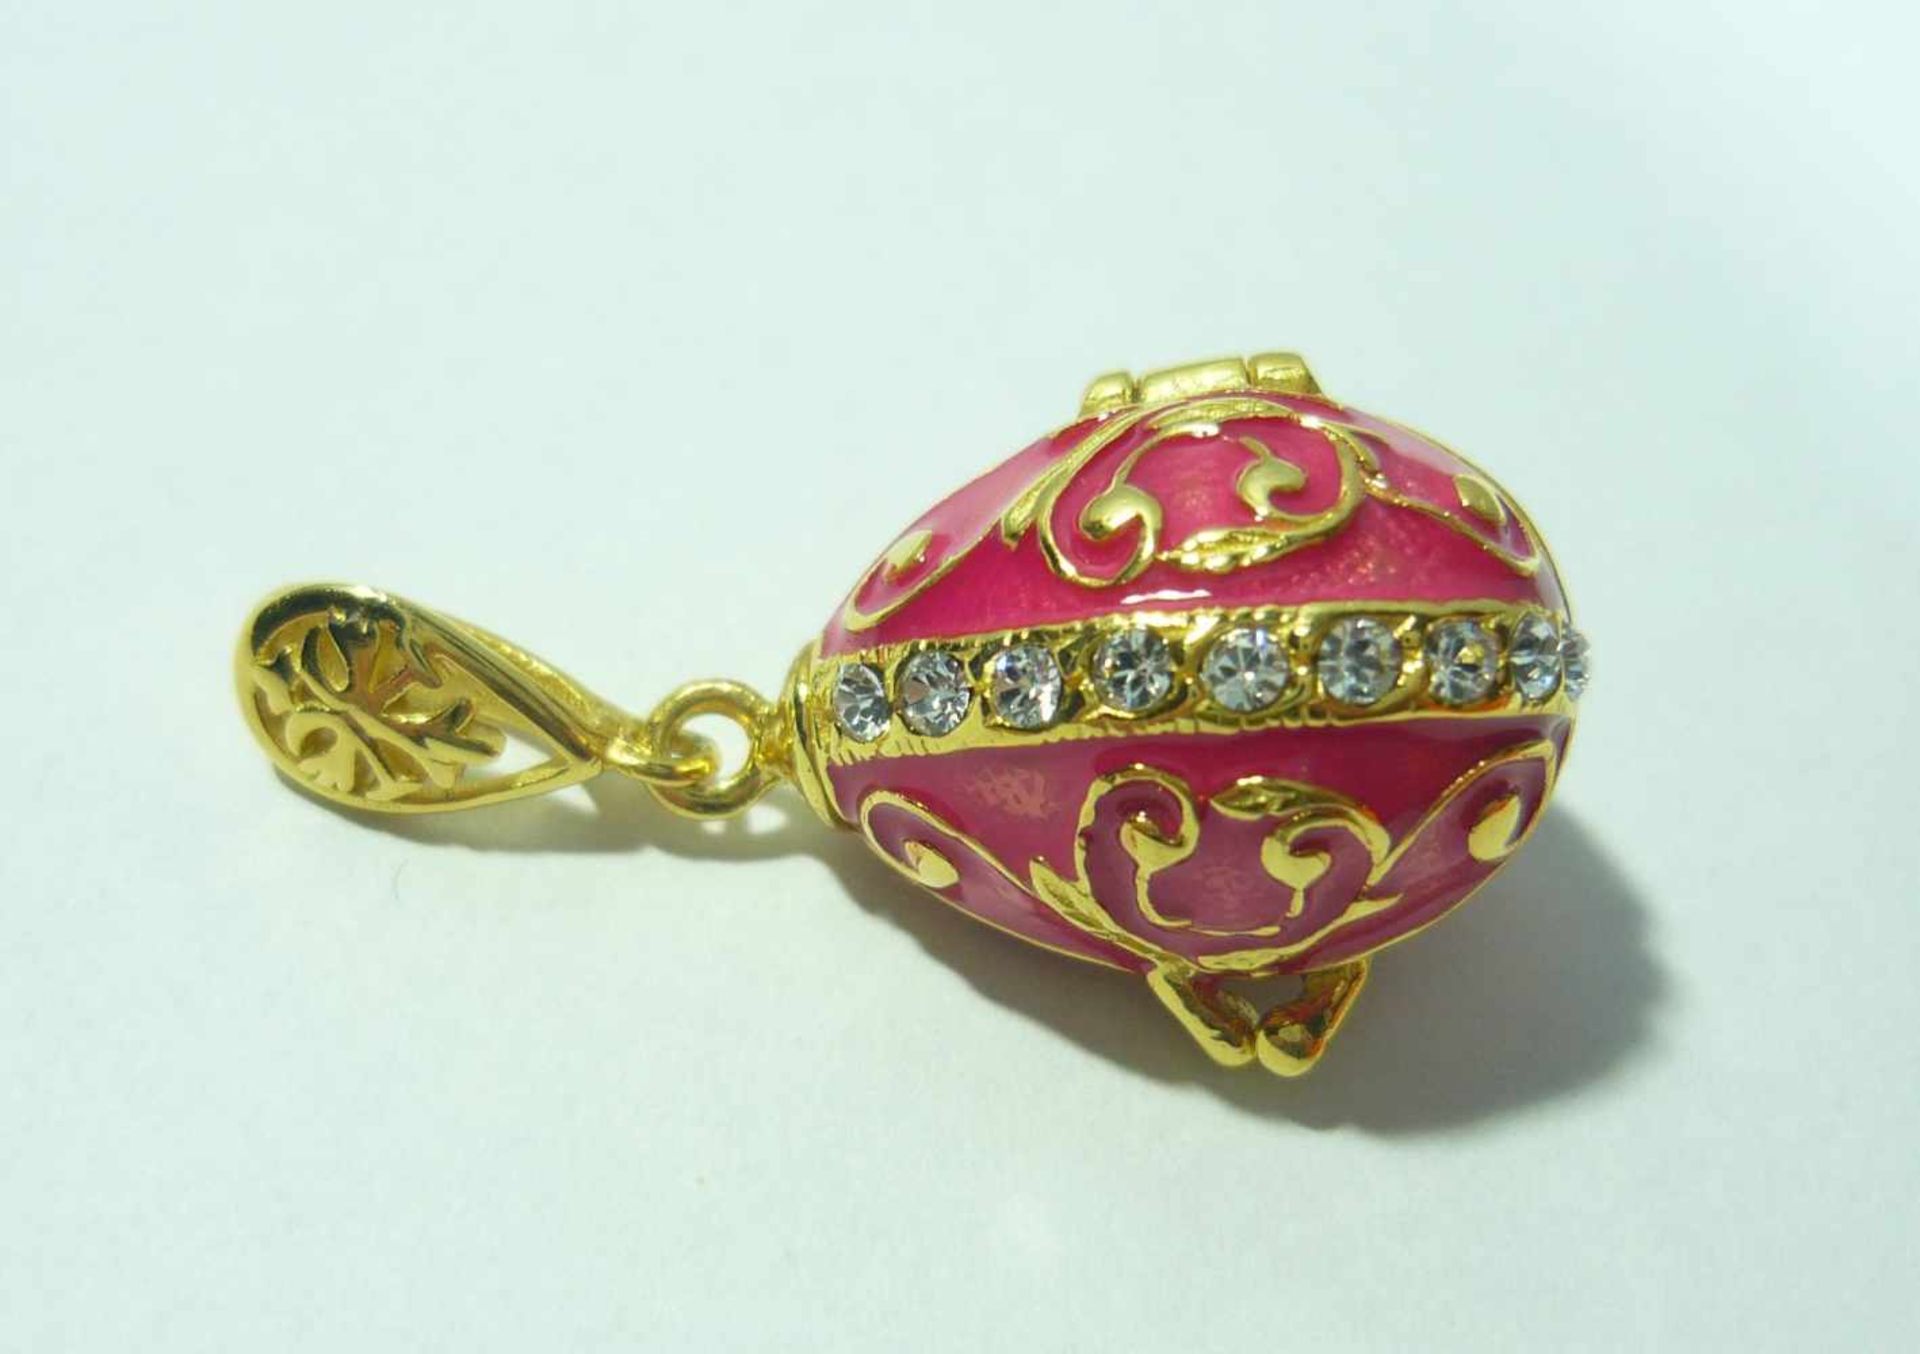 Rosa Ei. Kettenanhänger in russischem Faberge-Stil. 925 Sterling Silber, farbig emailliert und mit